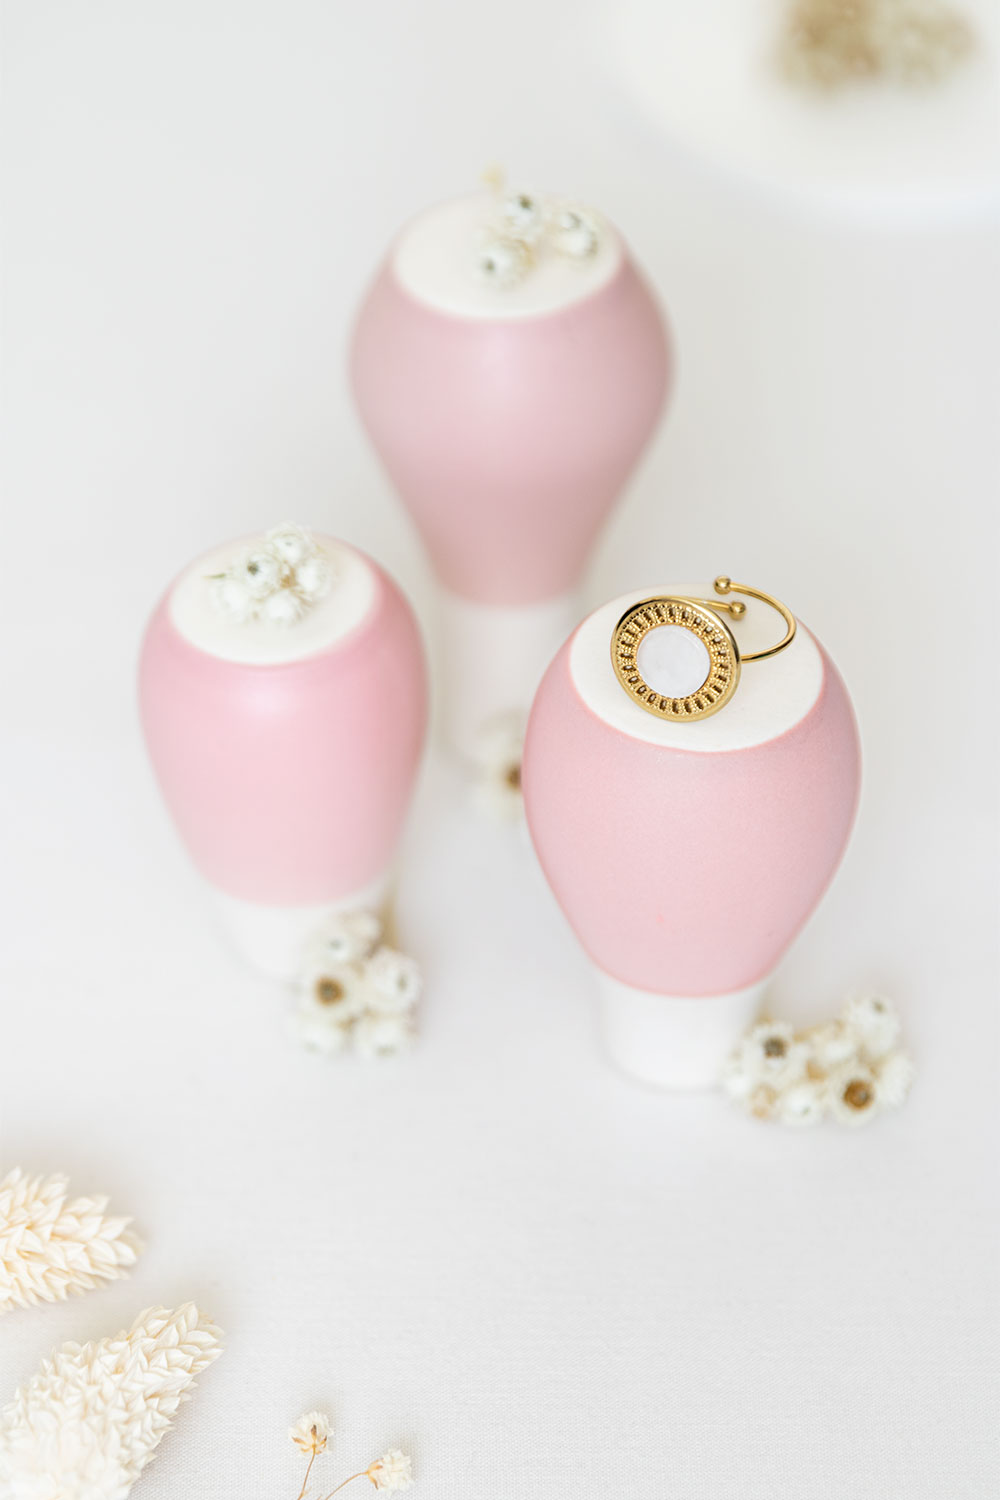 Bague dorée Amarok de la marque Vaniya Bijoux posée sur des vases rose poudré retrounés au milieu de fleurs séchées blanches